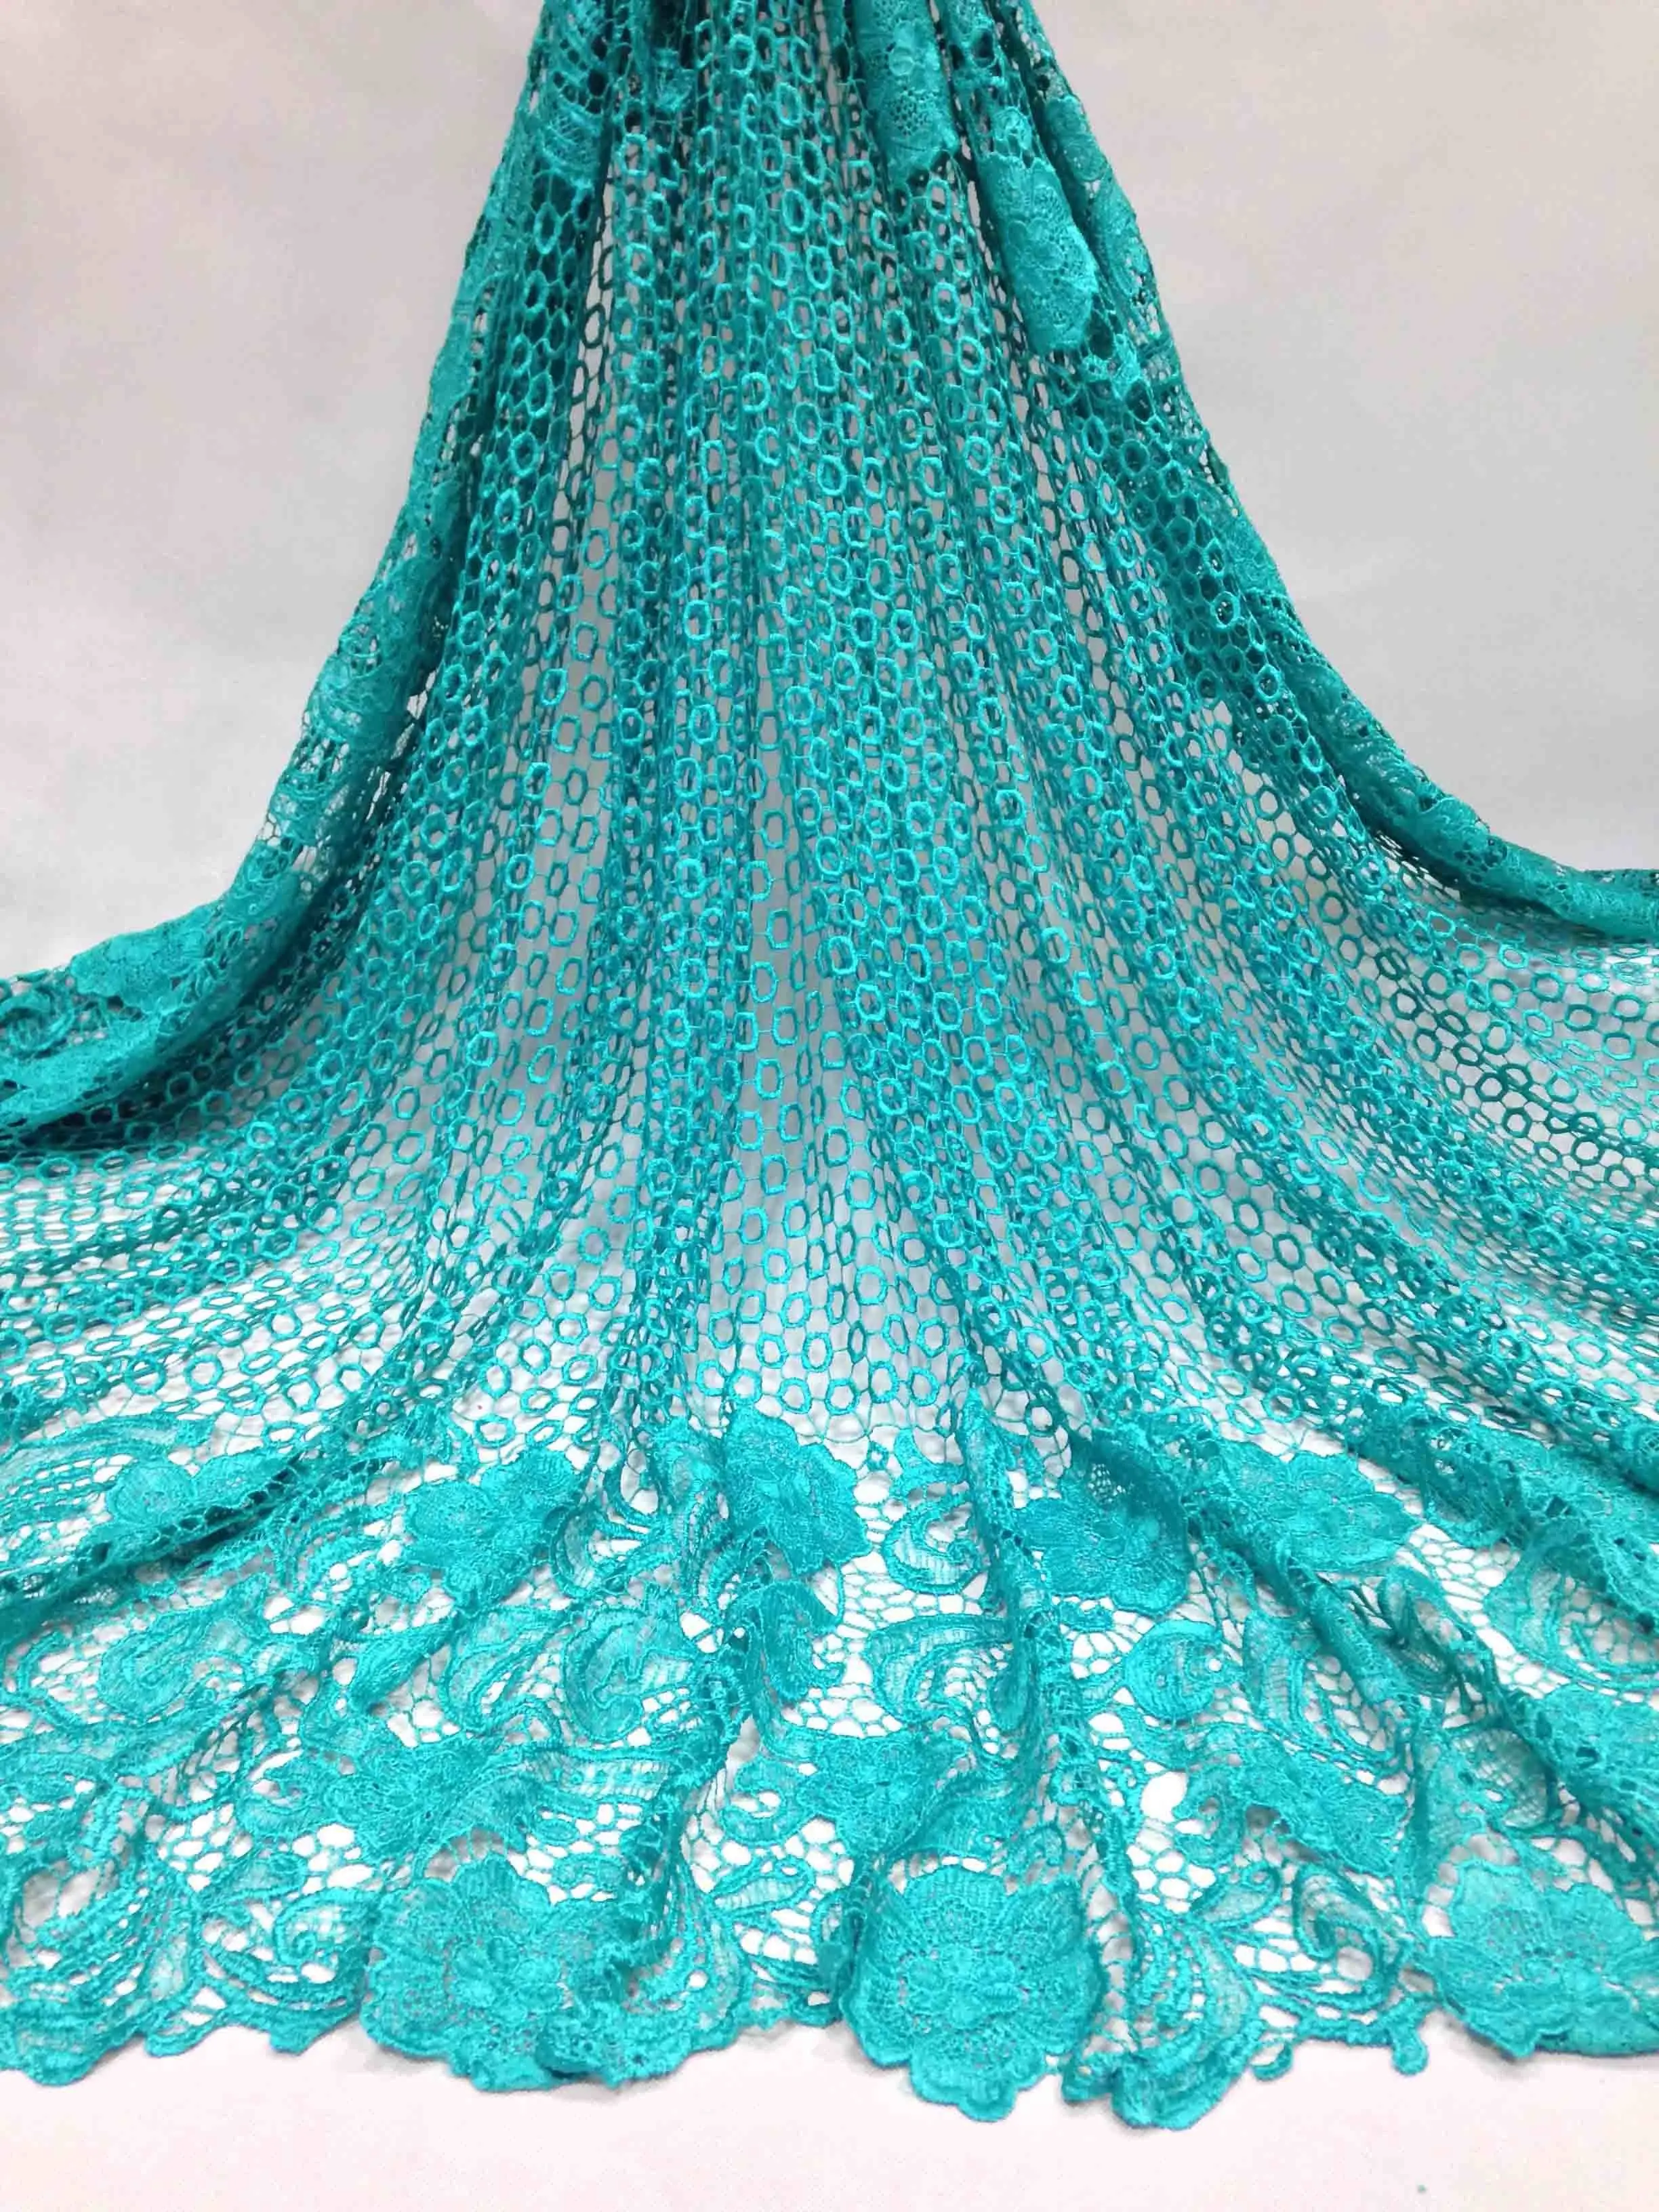 Сине-зеленый Африканский кружевной ткани Новое поступление Африканский шнур кружева для свадебных платьев/гипюр кружевной ткани высокого качества M10483